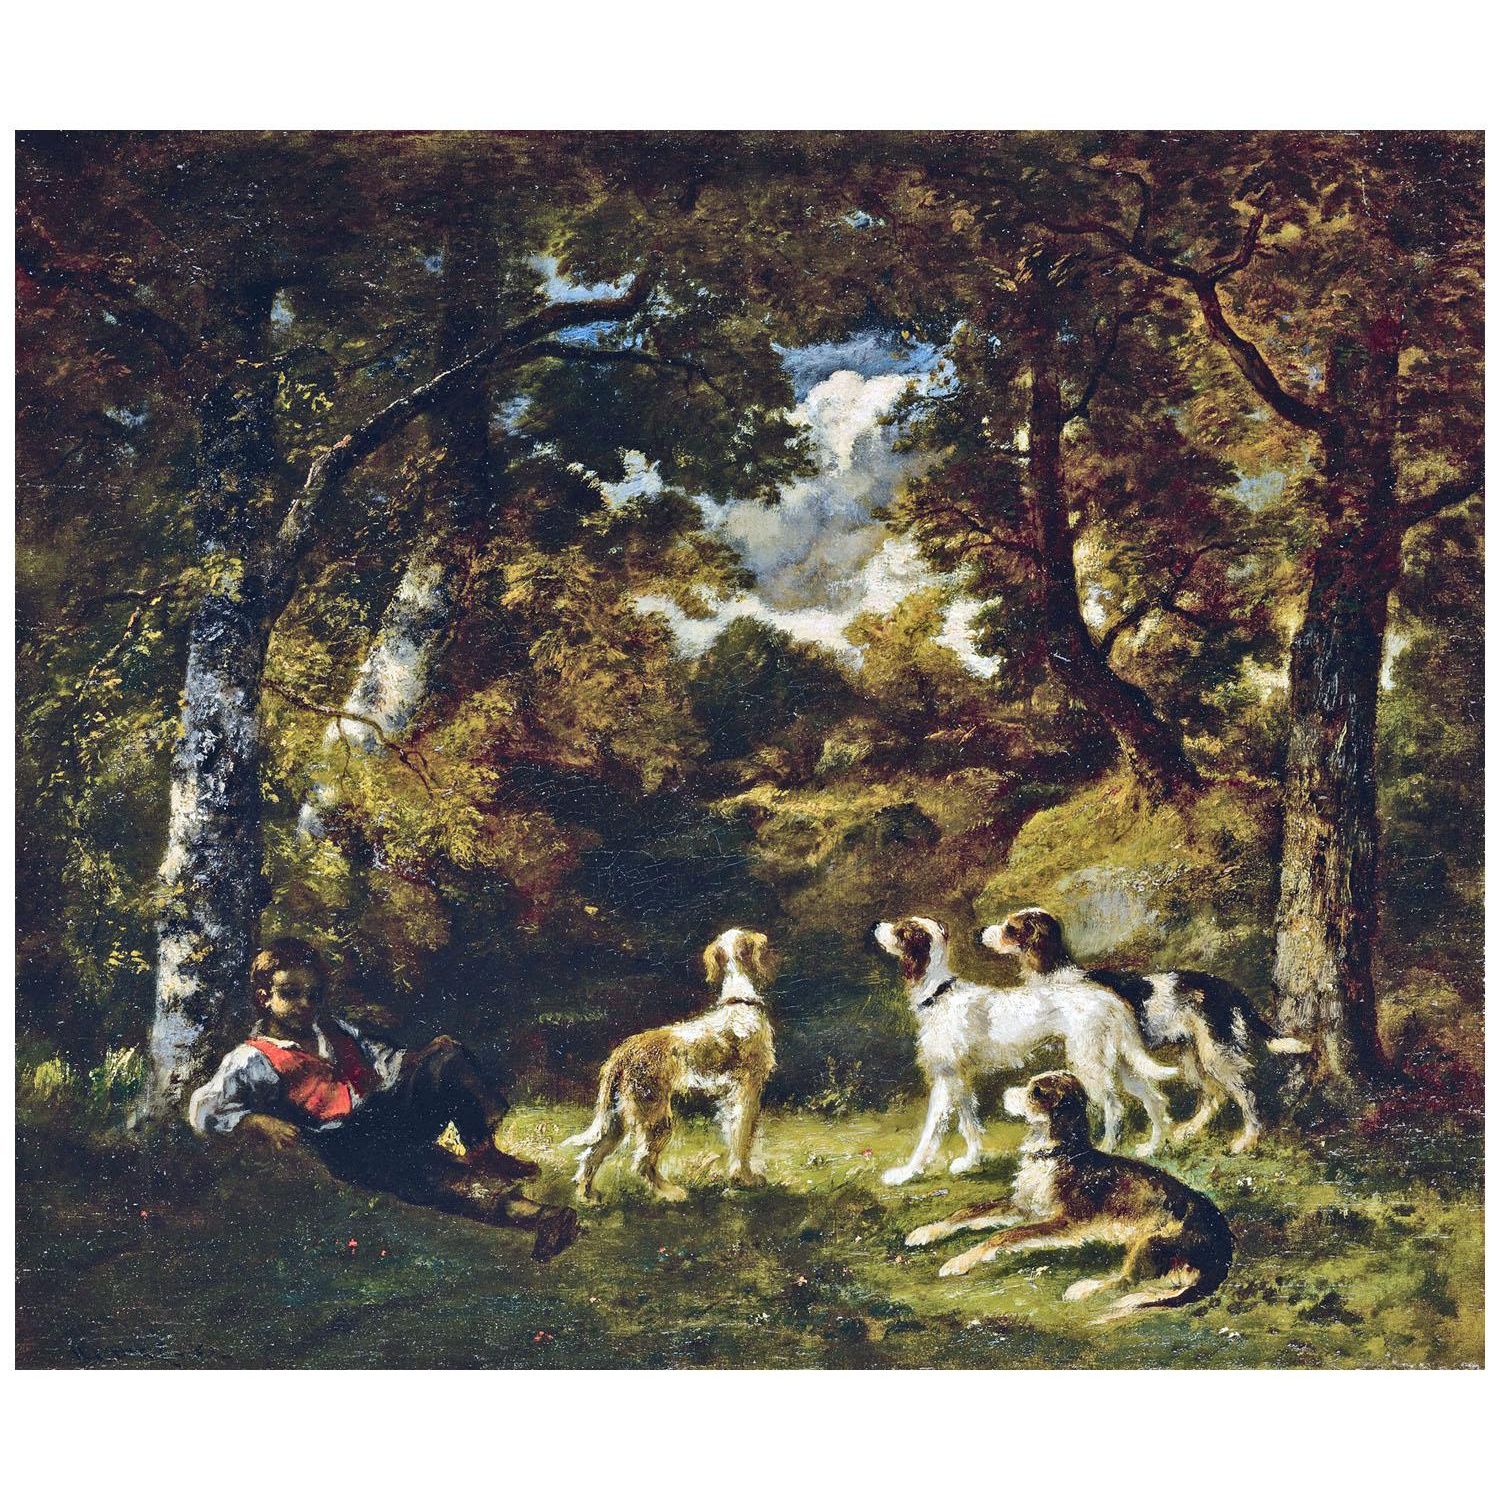 Narcisse Diaz. Repos de la chasse. 1855. Galerie Michael, Beverly Hills